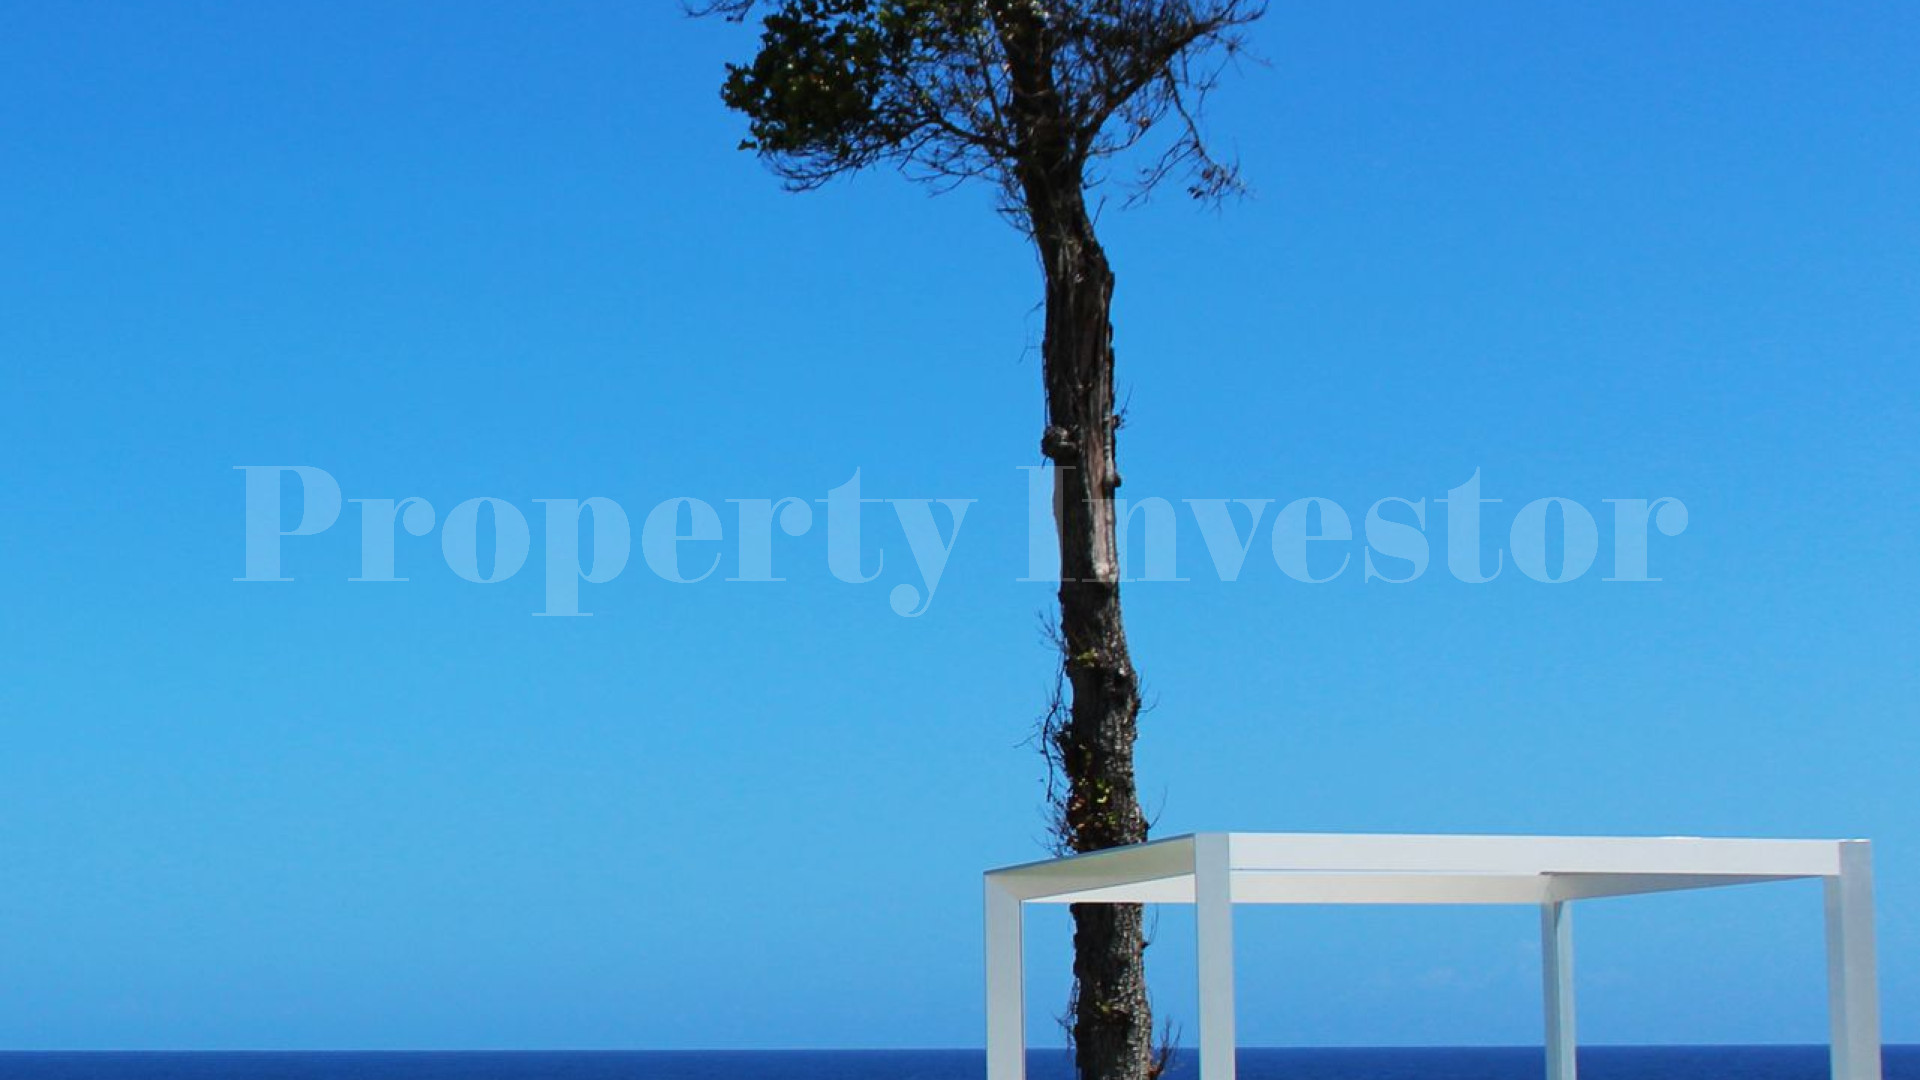 Участок в собственность в Доминиканской Республике с финансированием до 10 лет (Lot 67)